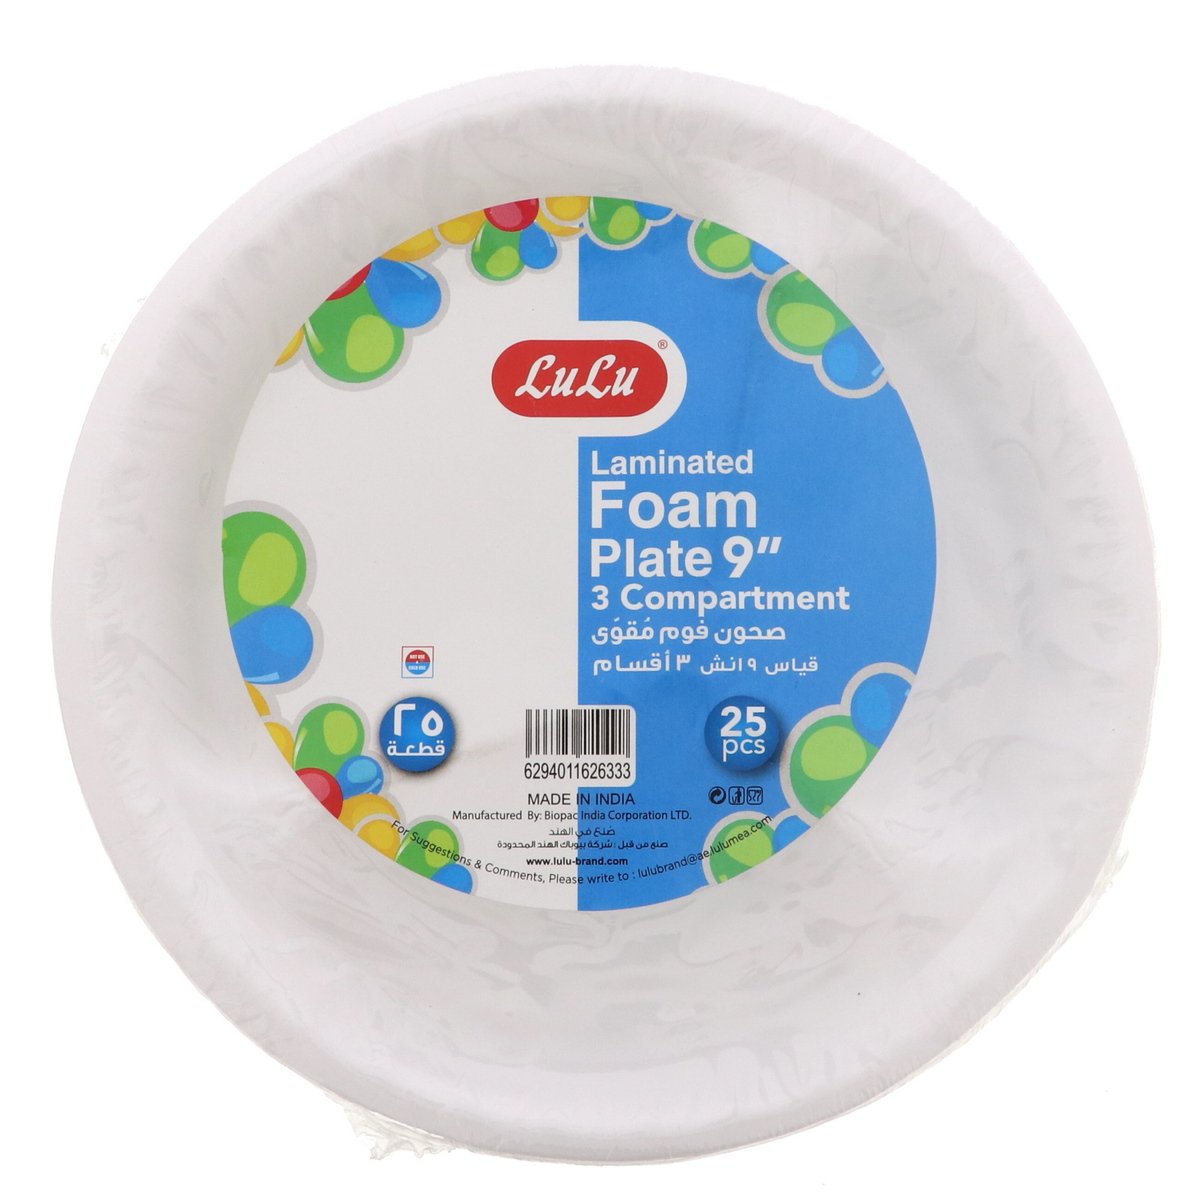 LuLu Laminated Foam Plate 9inch 25pcs